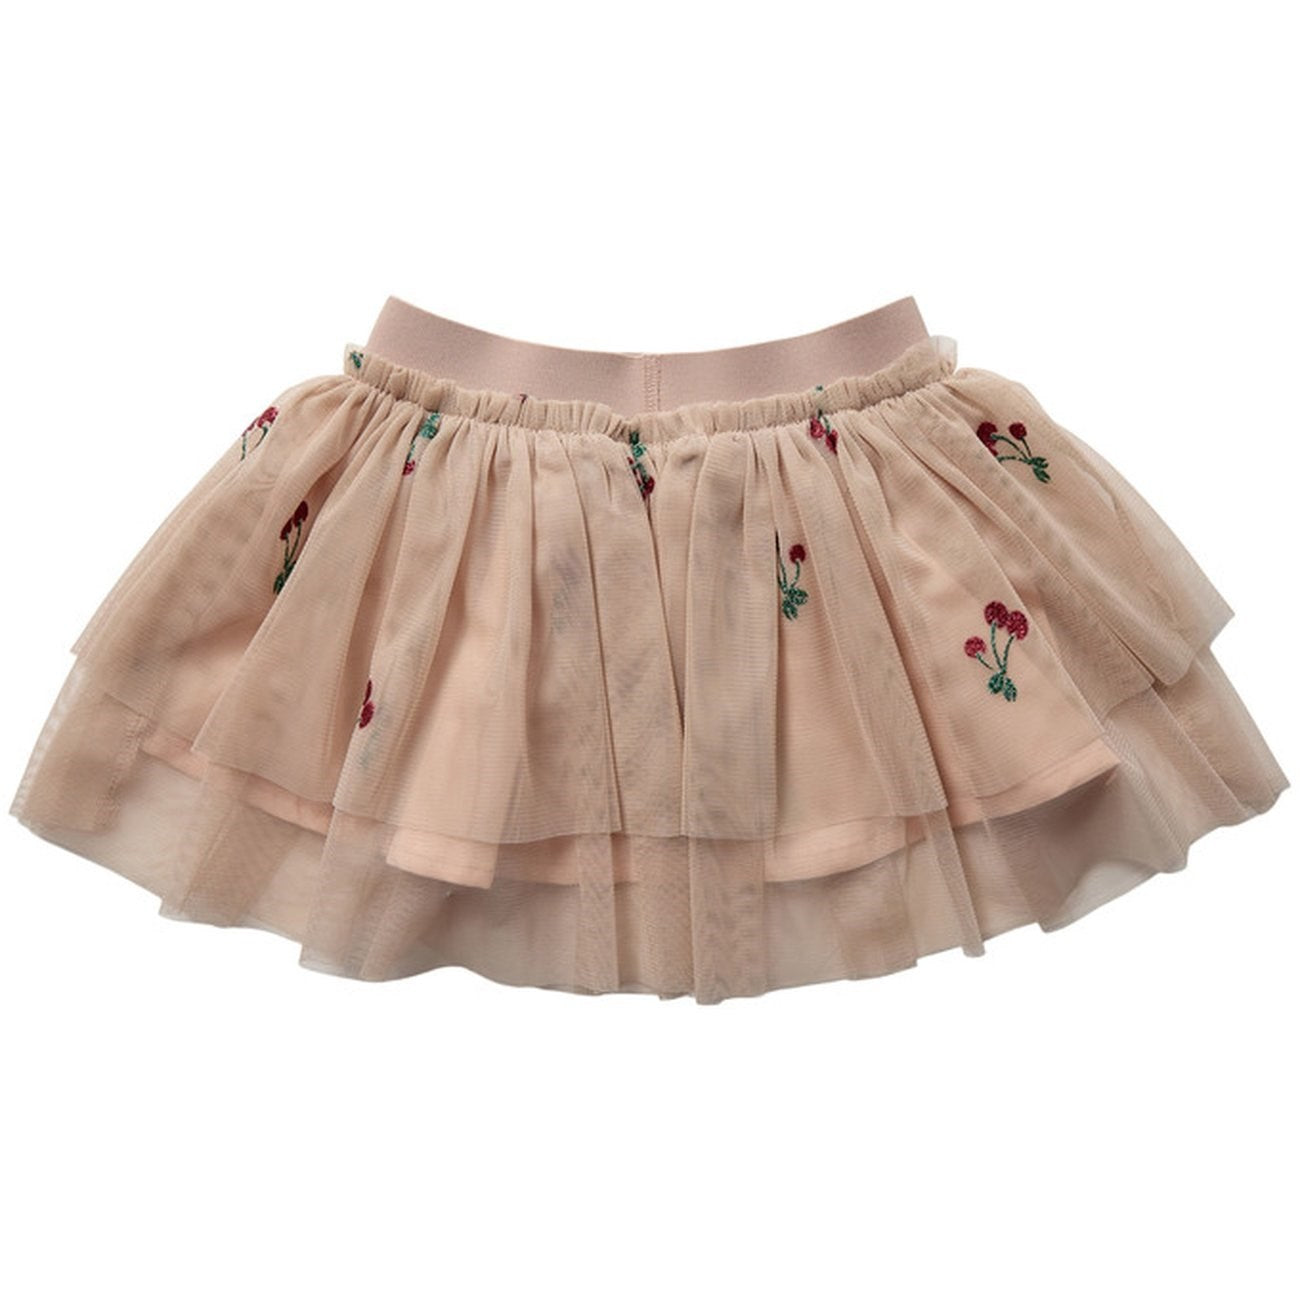 Sofie Schnoor Light Rose Skirt 6